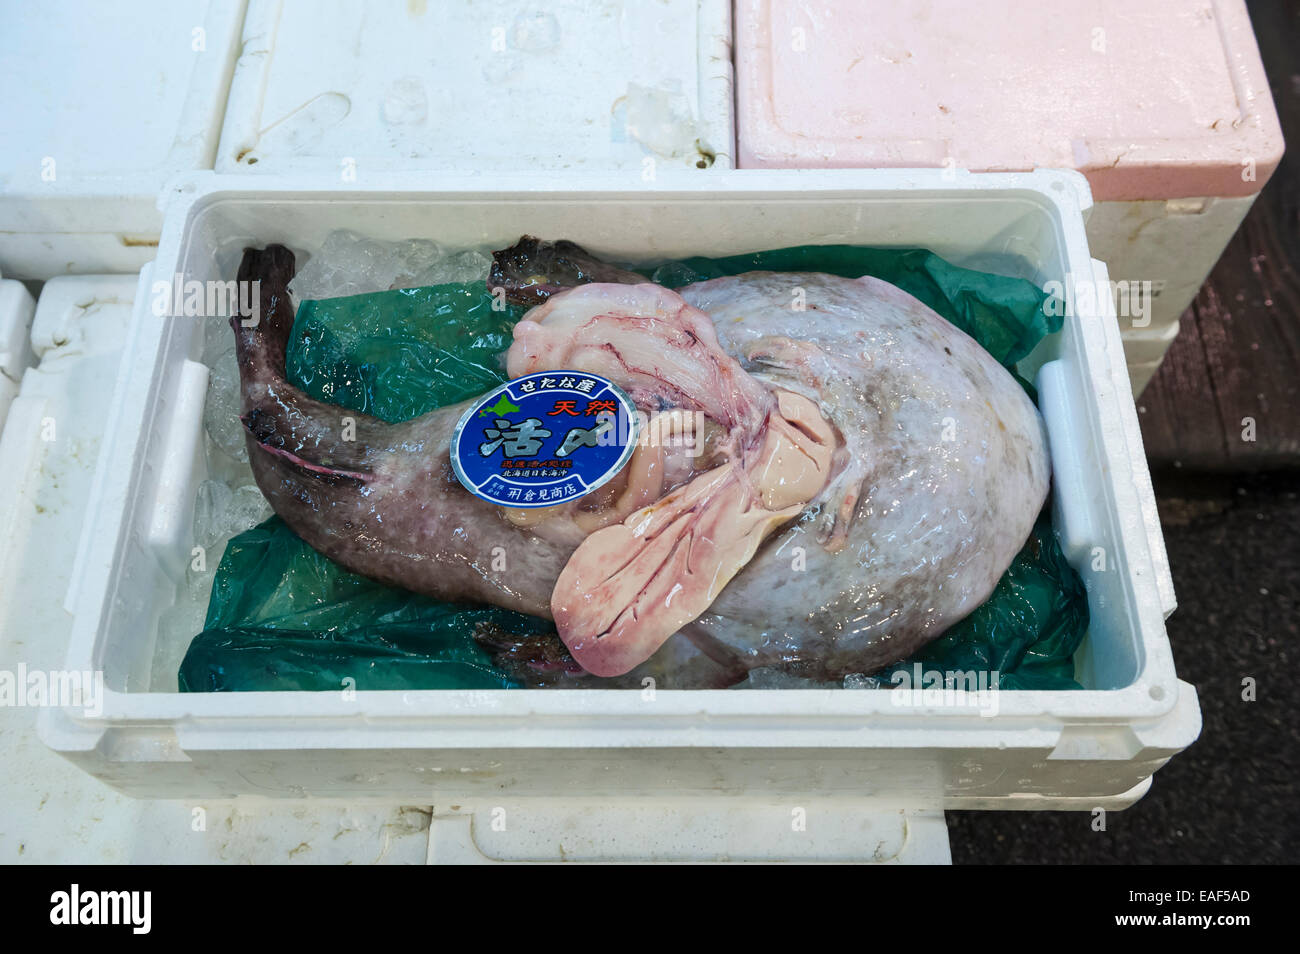 La baudroie (lotte), Lophius sp., le marché aux poissons de Tsukiji, Tokyo, Japon Banque D'Images